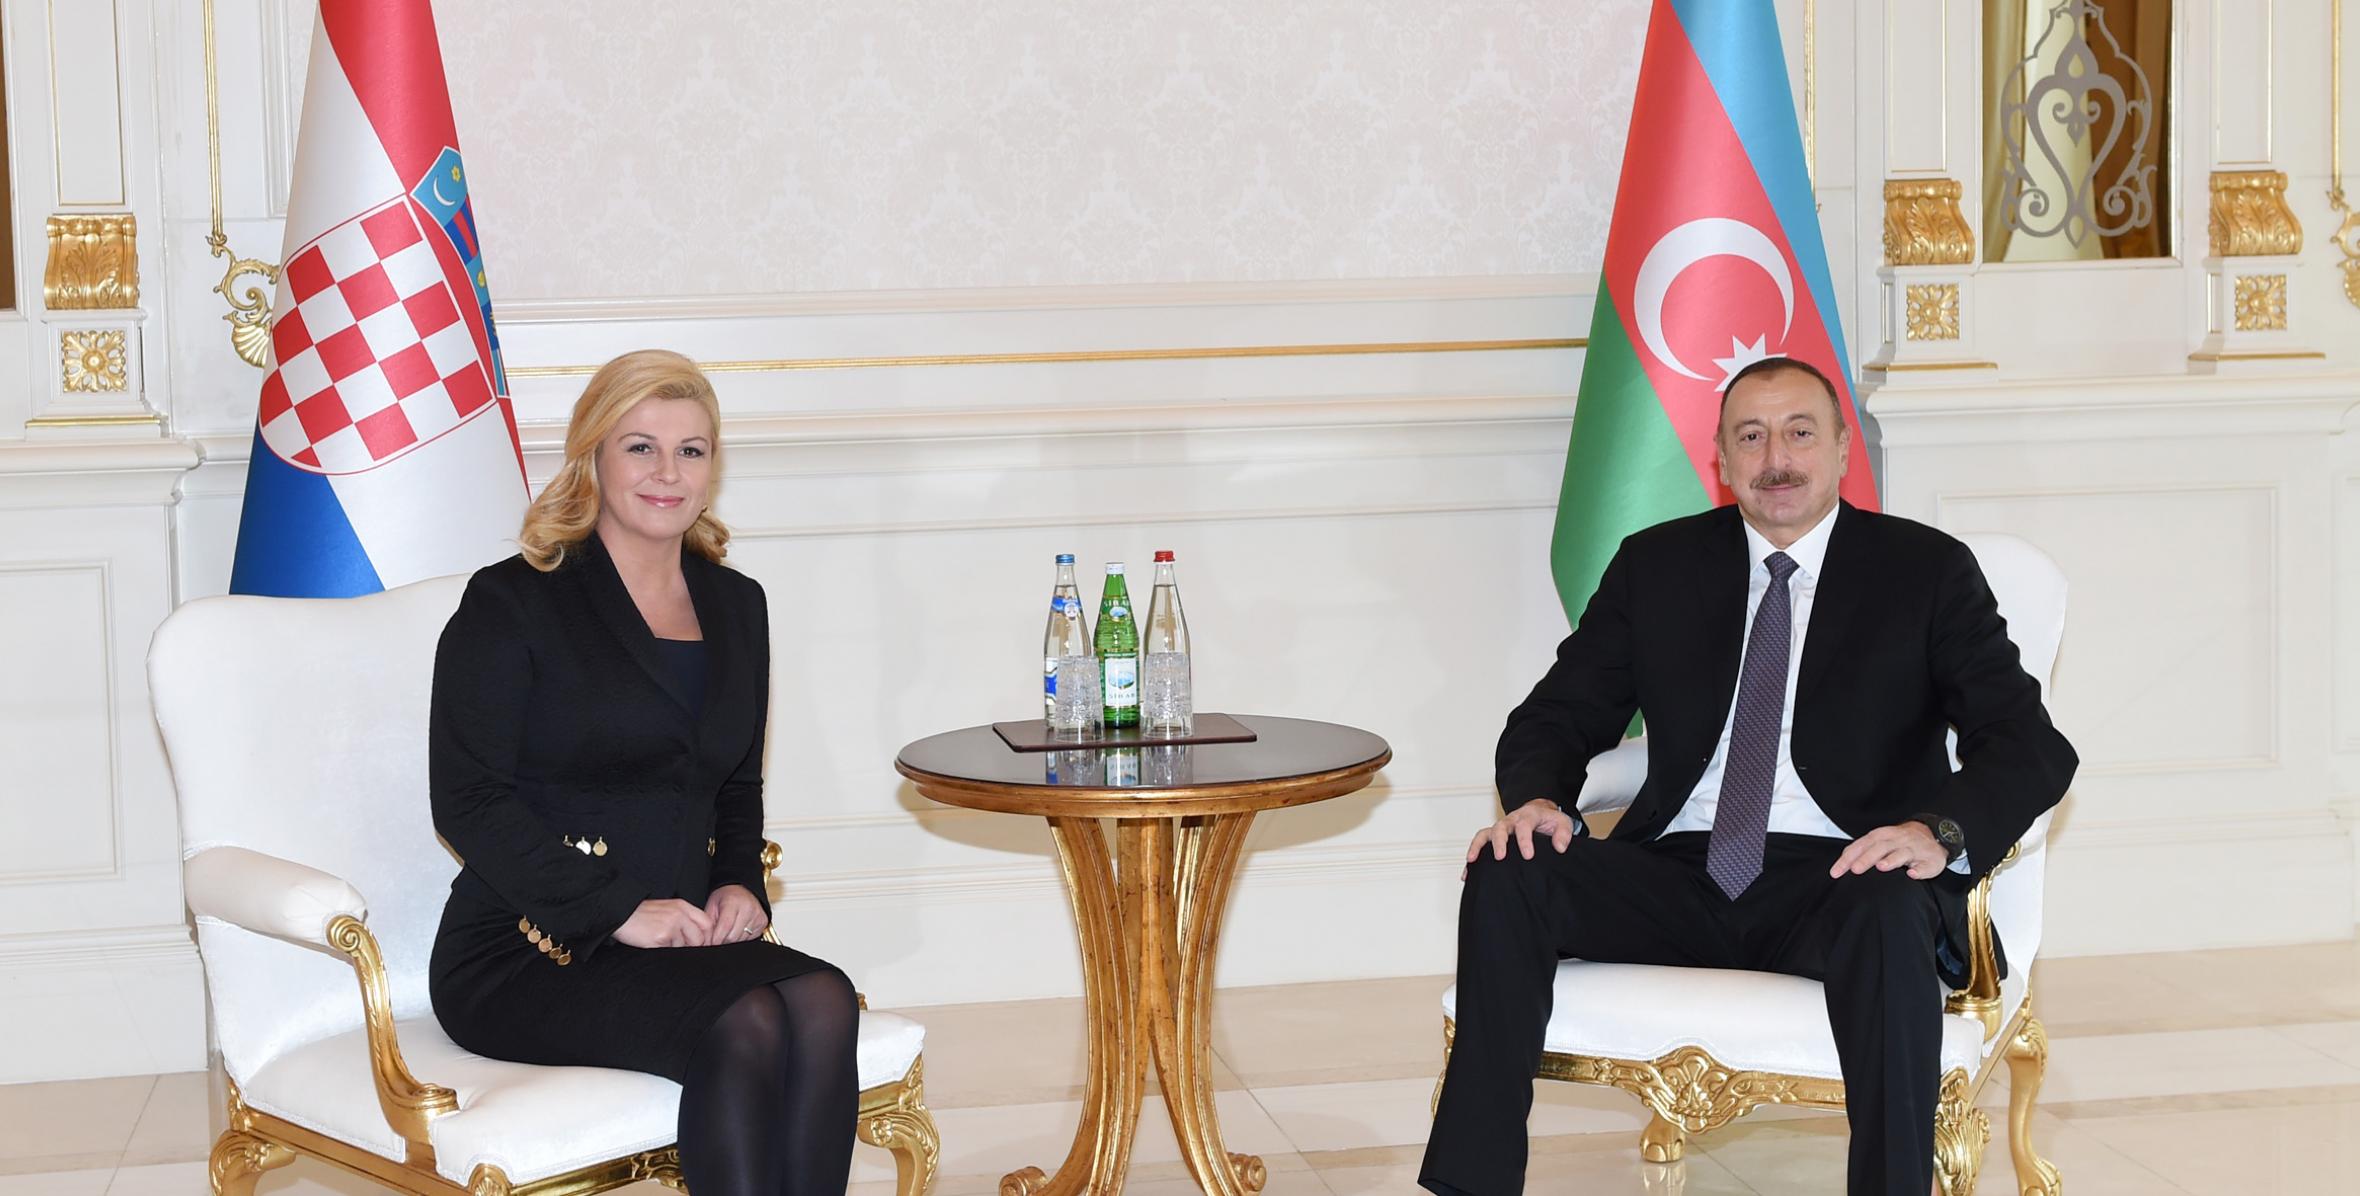 Состоялась встреча президентов Азербайджана и Хорватии один на один